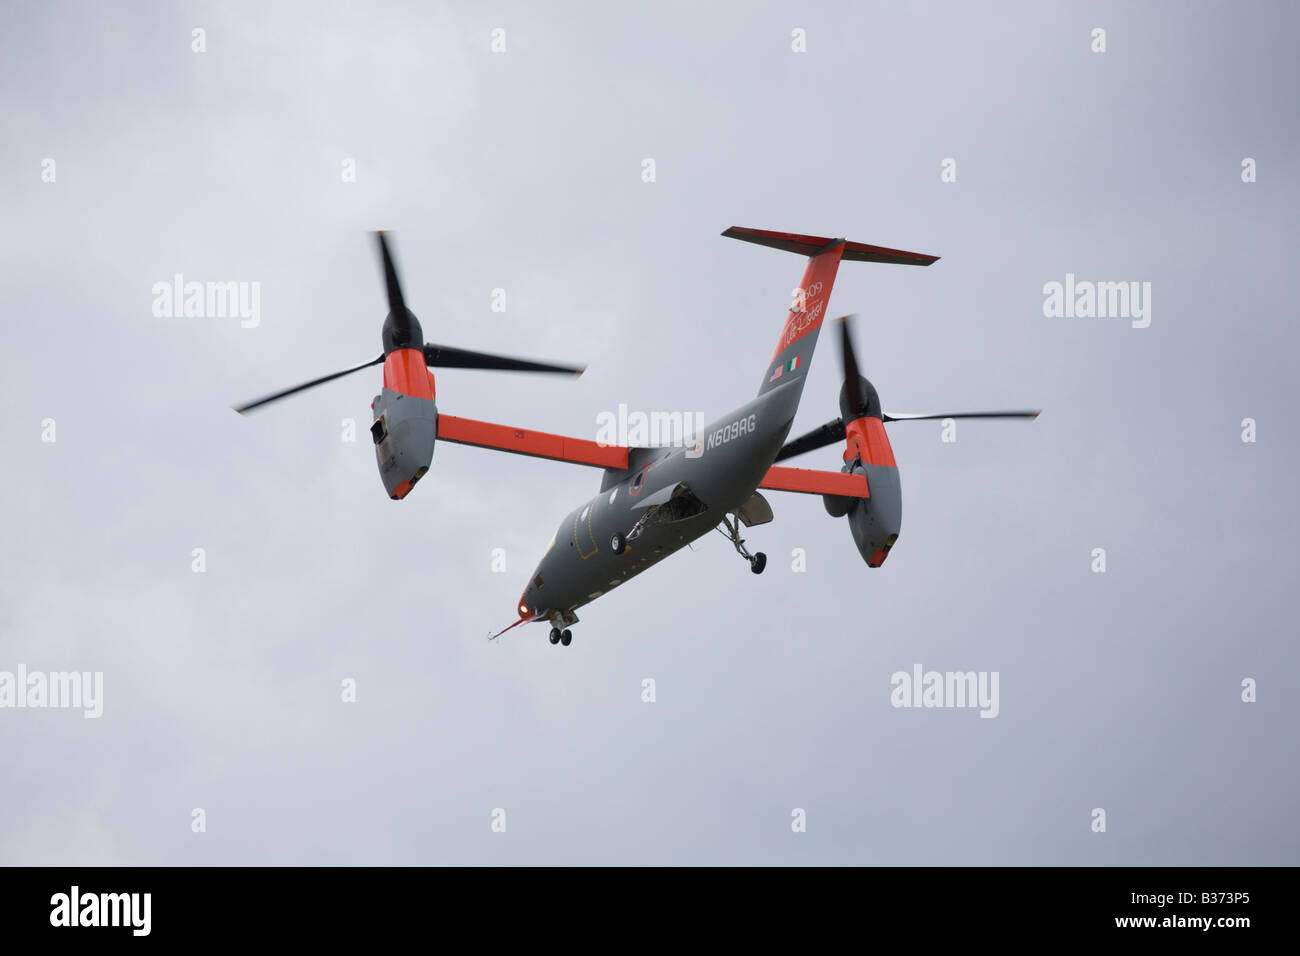 Bell Agusta Stockfotos und -bilder Kaufen - Alamy